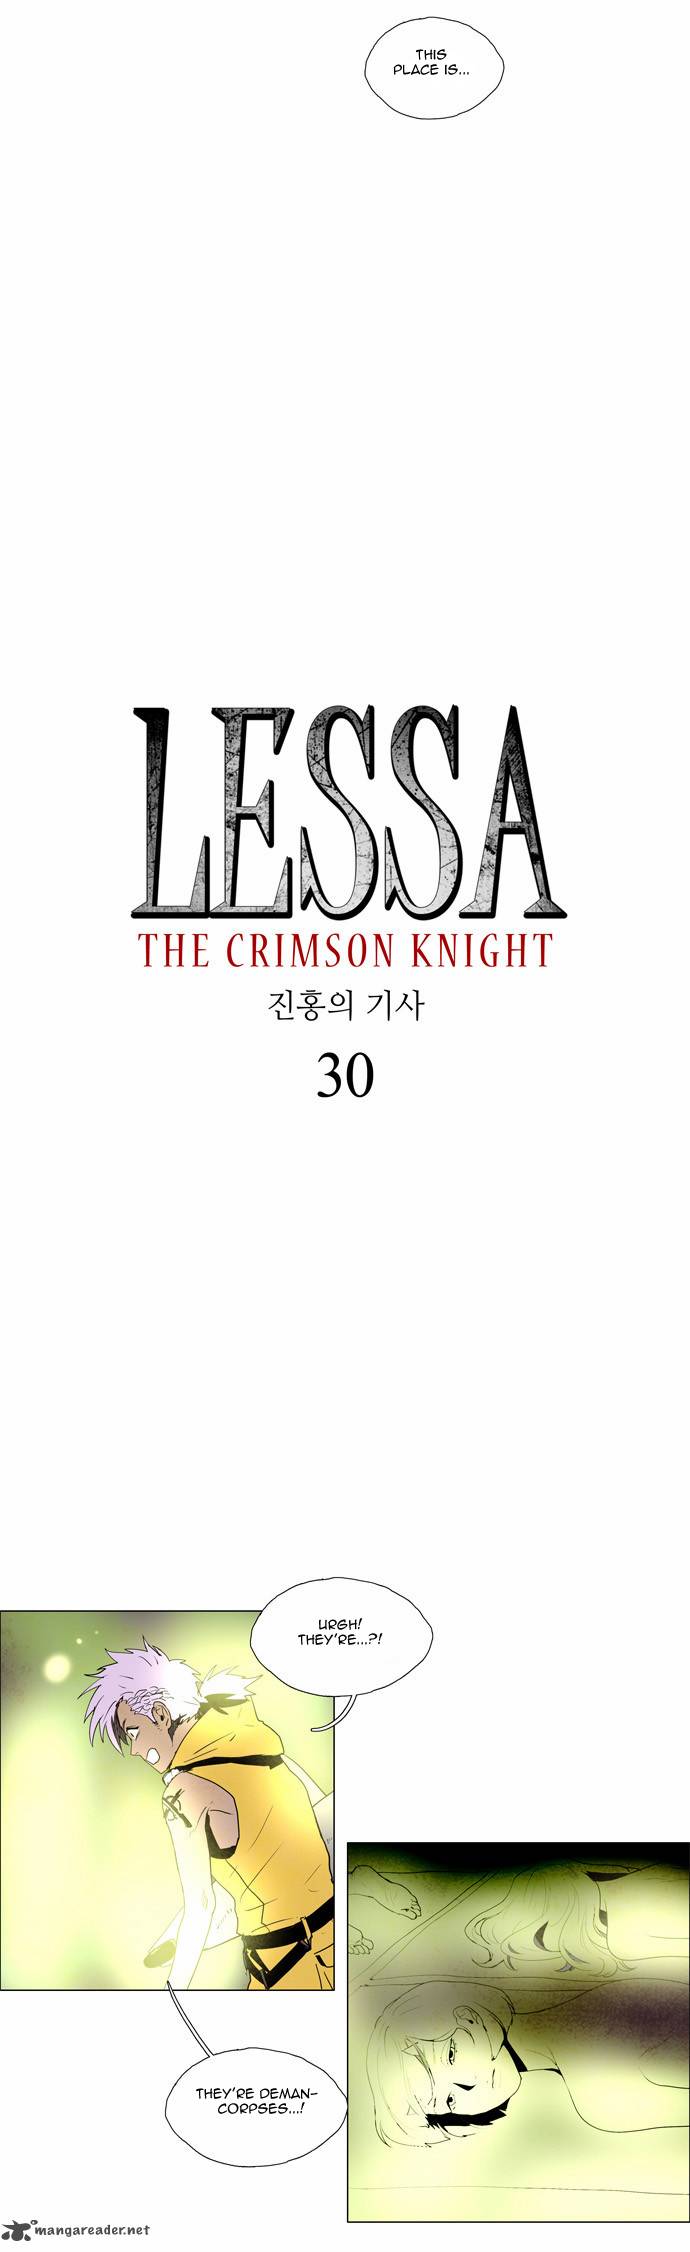 lessa_the_crimson_knight_30_4